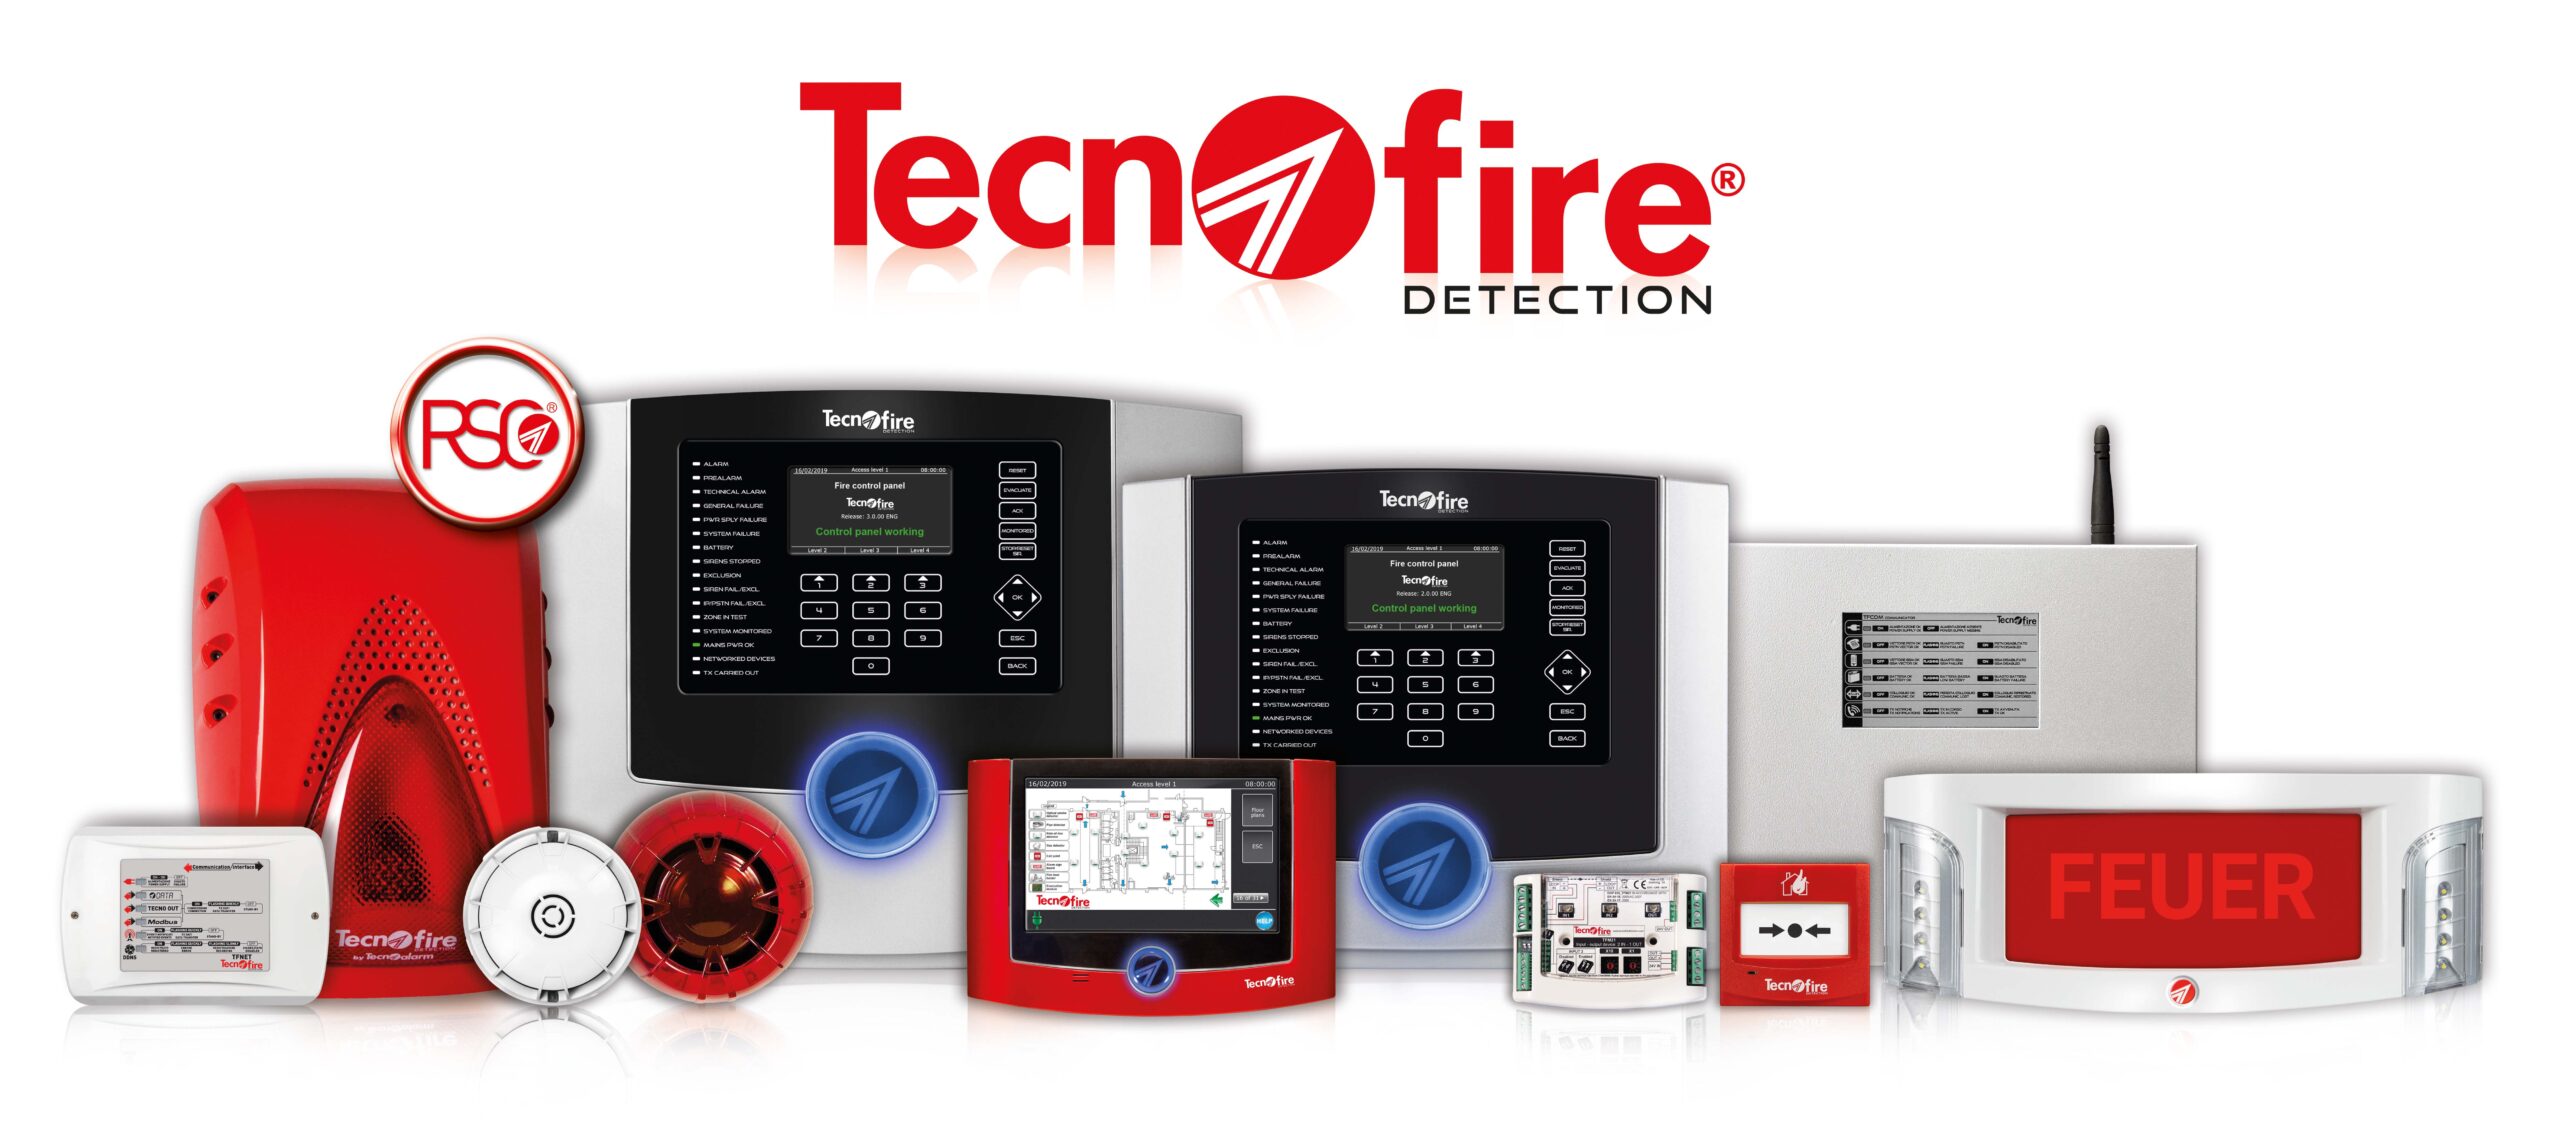 Tecnofire bietet in dem normativ geregelten Bereich der Brandwarn- und Brandmeldeanlagen, ein zukunftsweisendes und effizientes System mit innovativer Technik und einfacher Installation an.